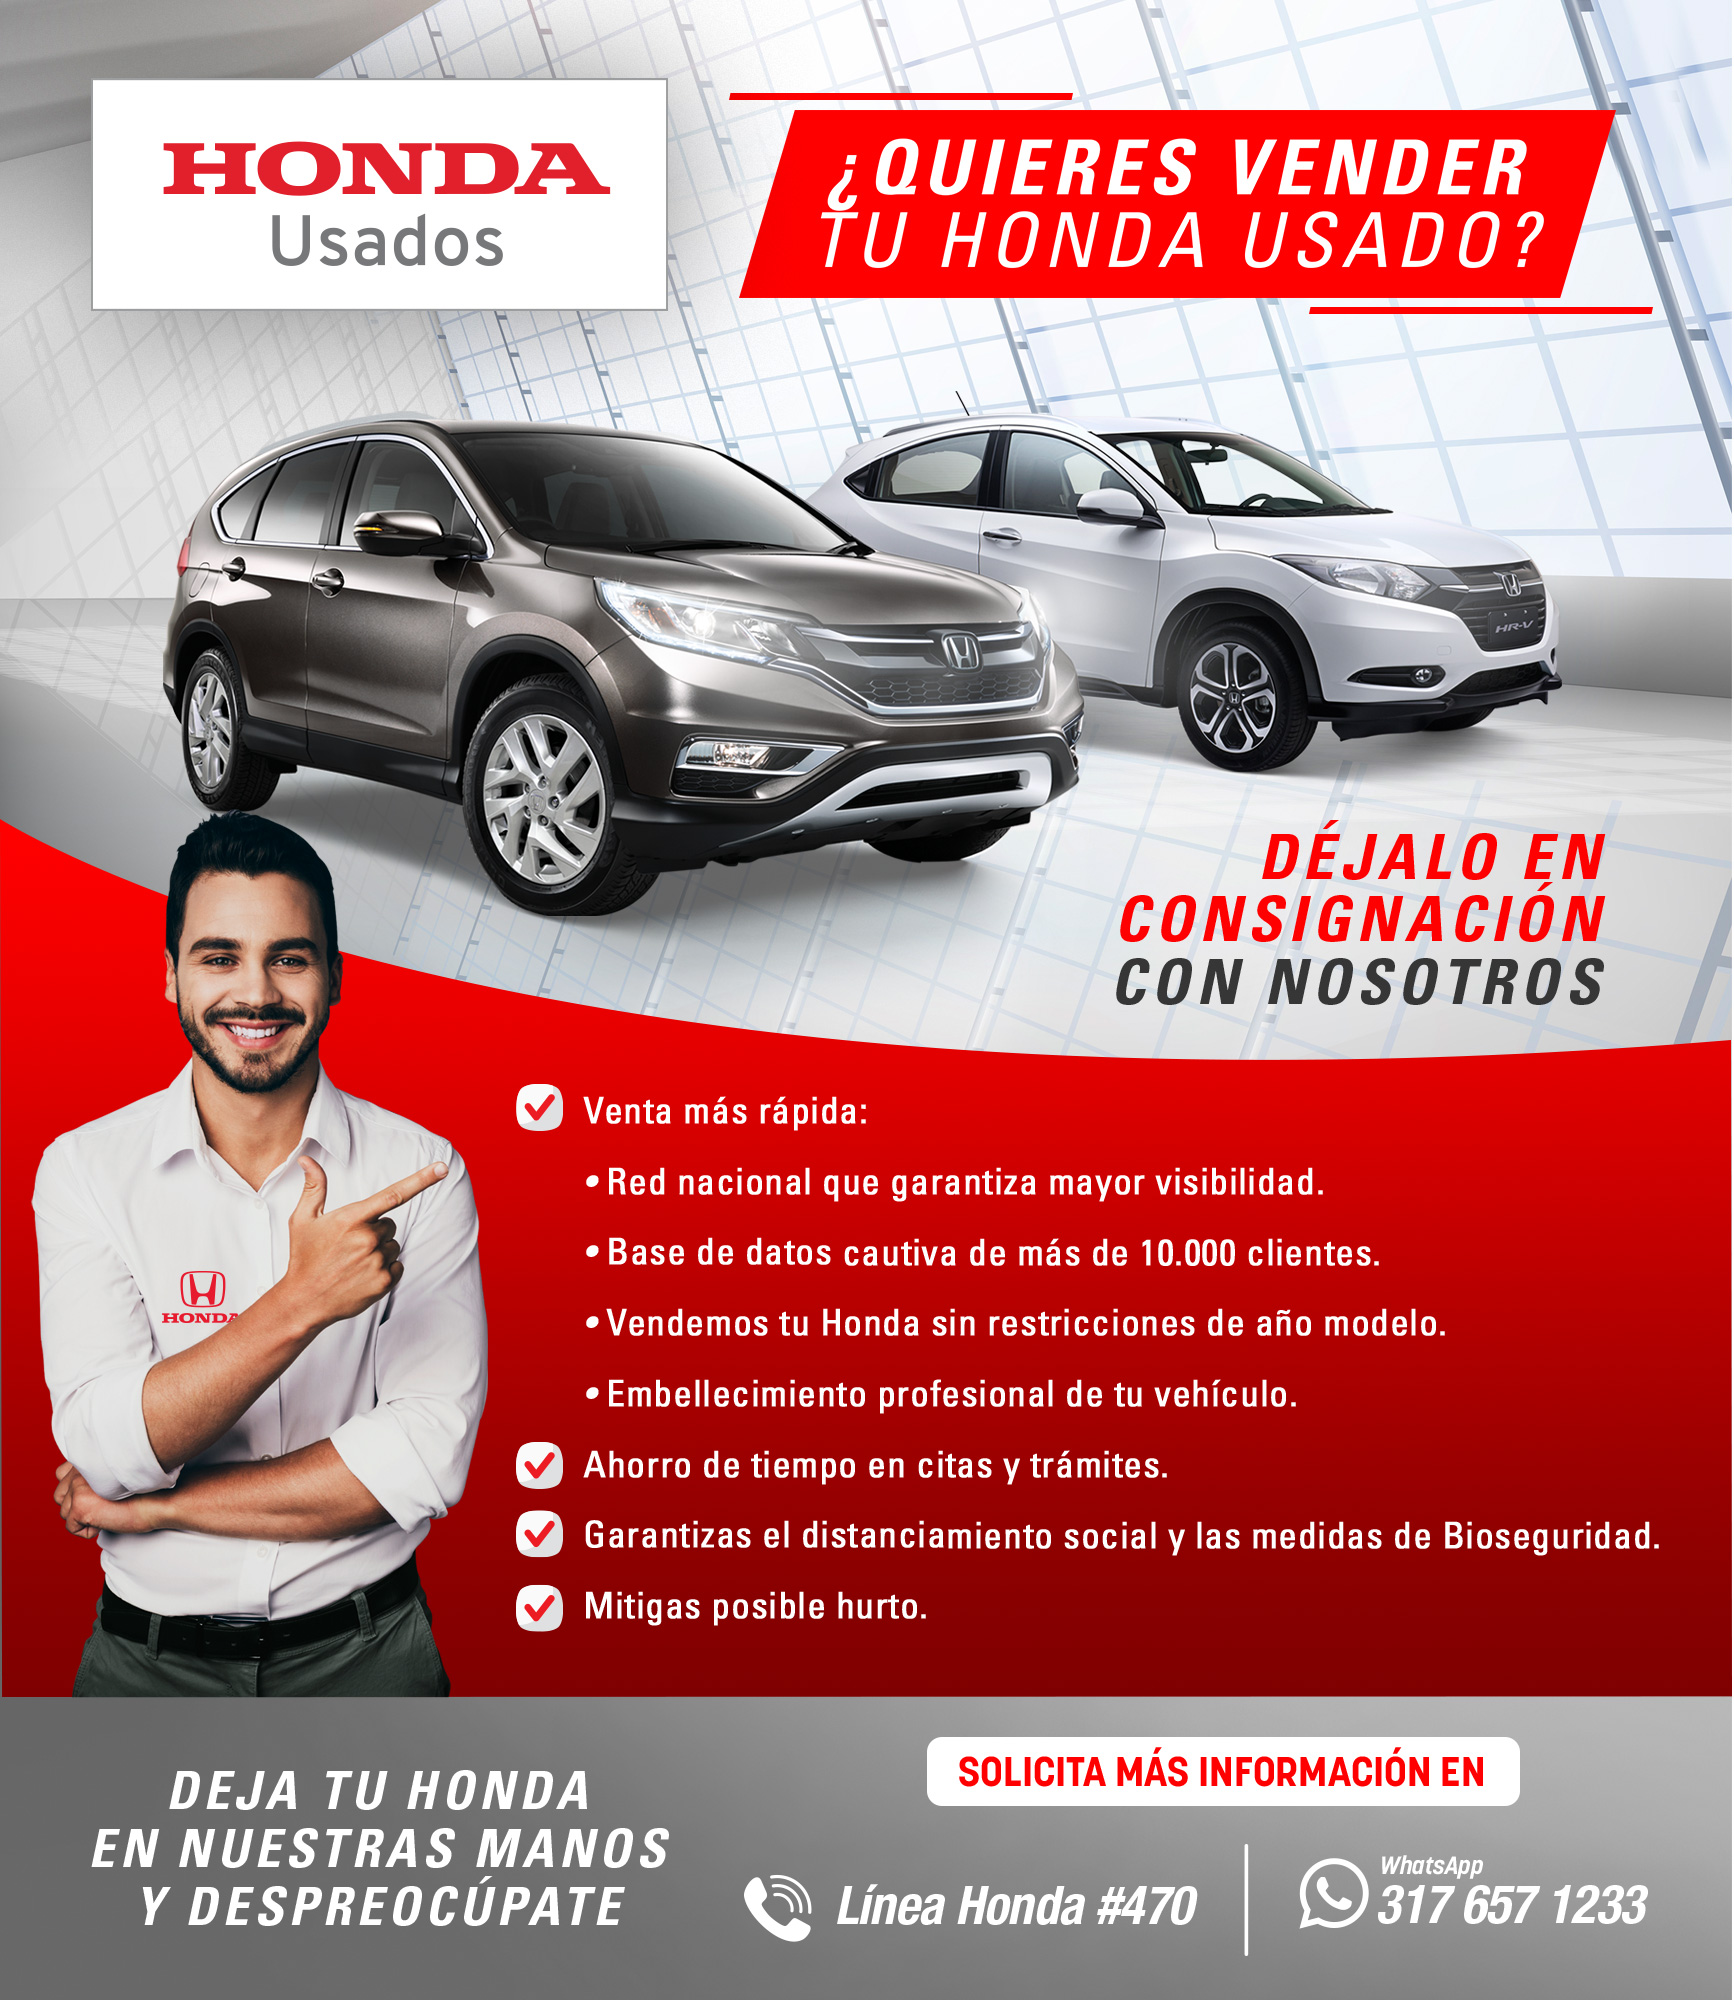 Honda Usados | Déjalo en consignación con nosotros